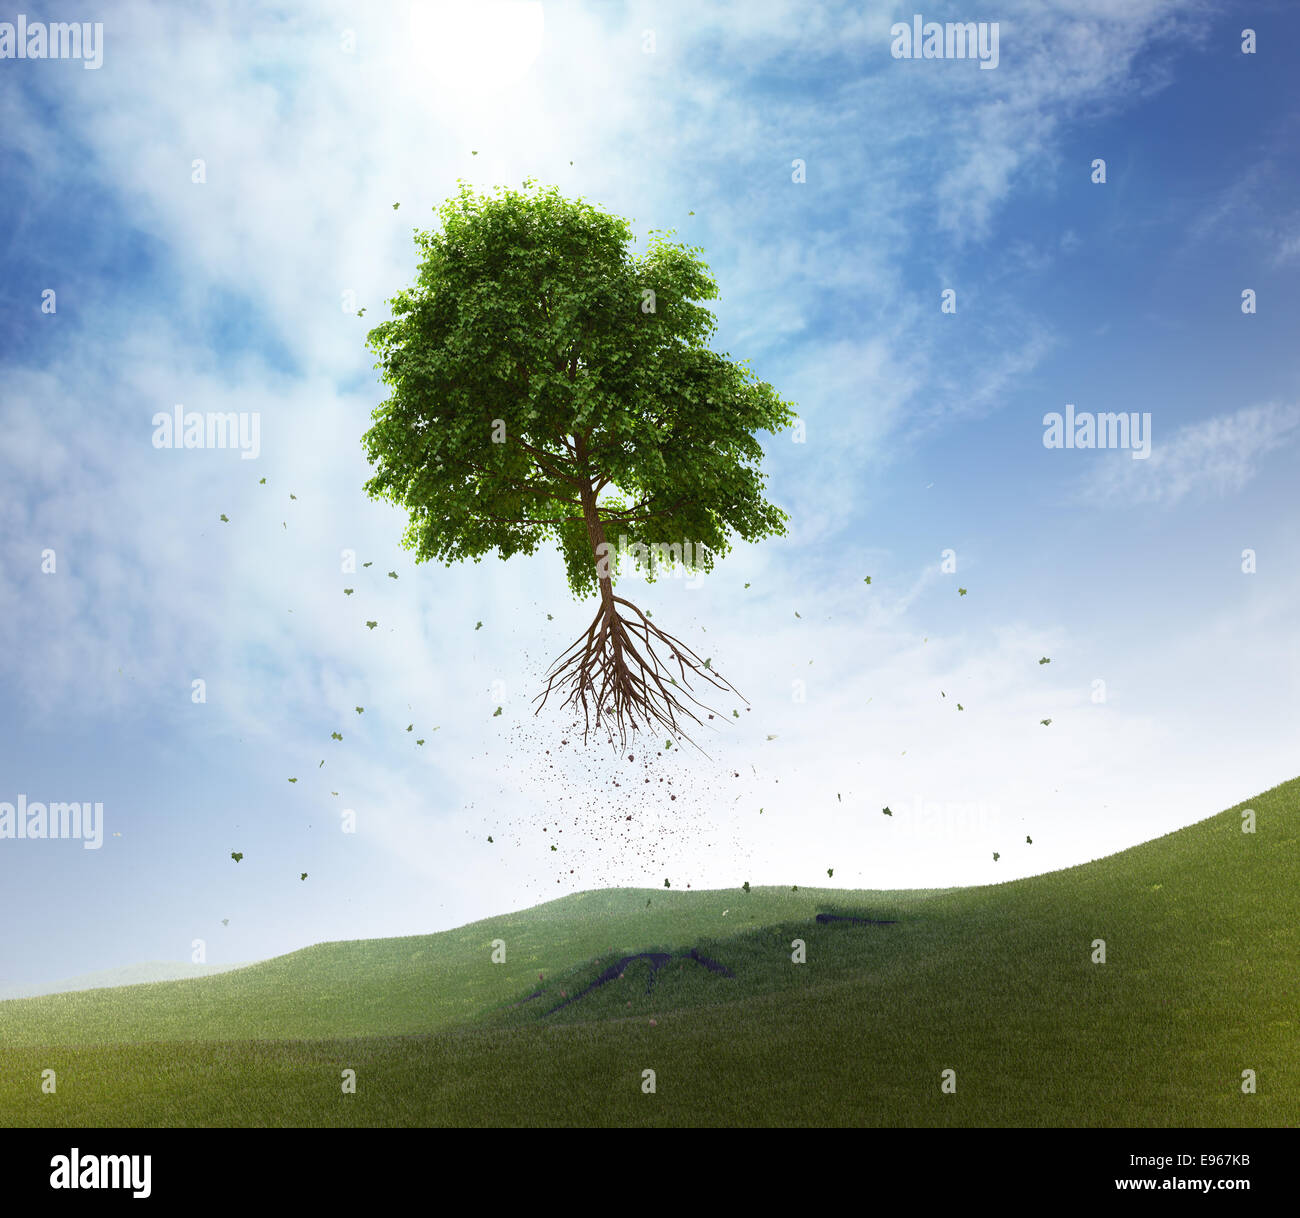 Ein Baum in den Himmel - Konzept der Freiheit wegfliegen Stockfoto